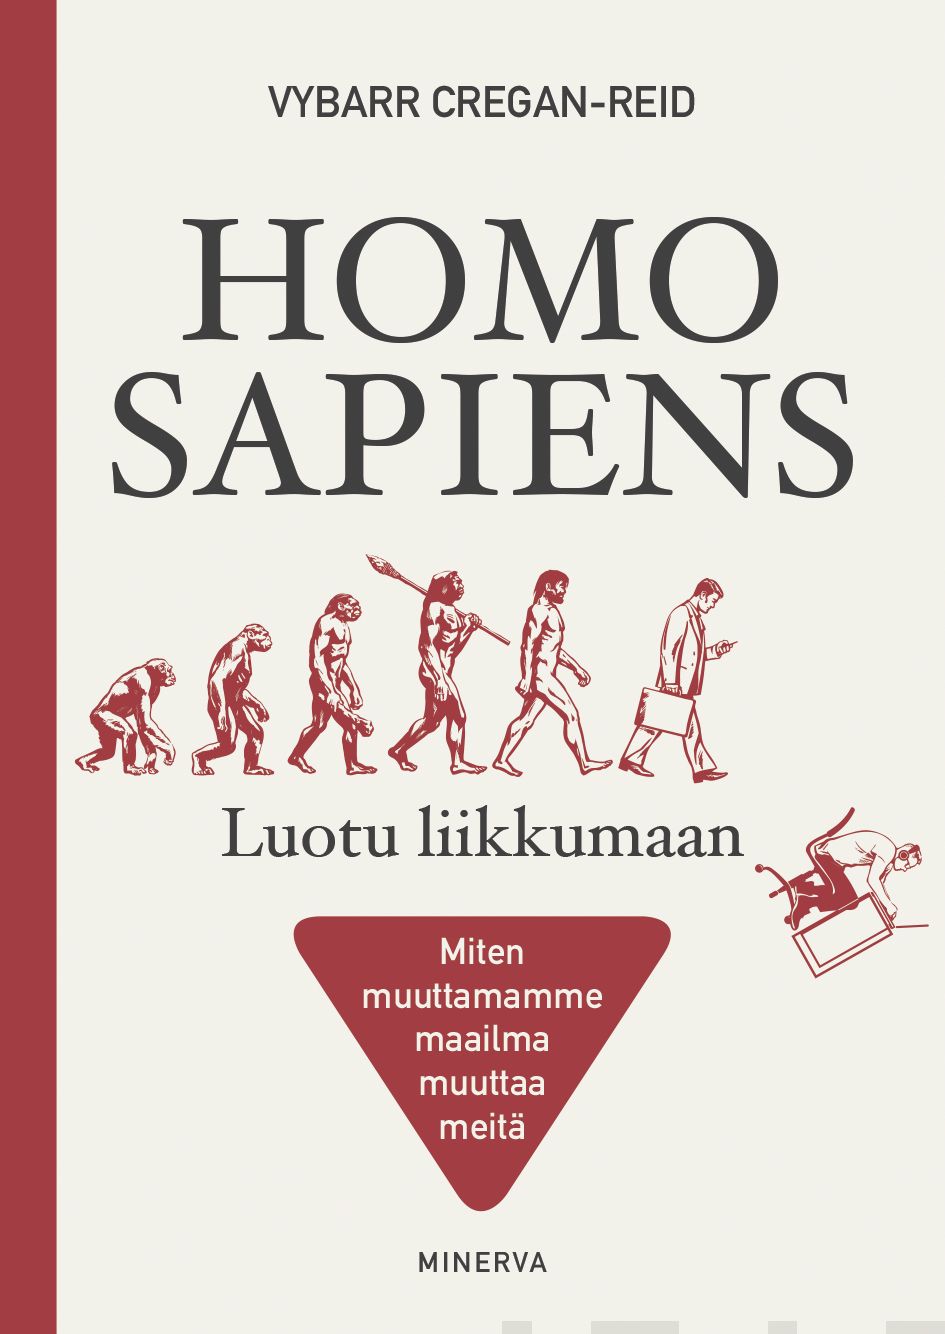 Cregan-Reid, Vybarr - Homo Sapiens - Luotu liikkumaan: Miten muuttamamme maailma muuttaa meitä, ebook